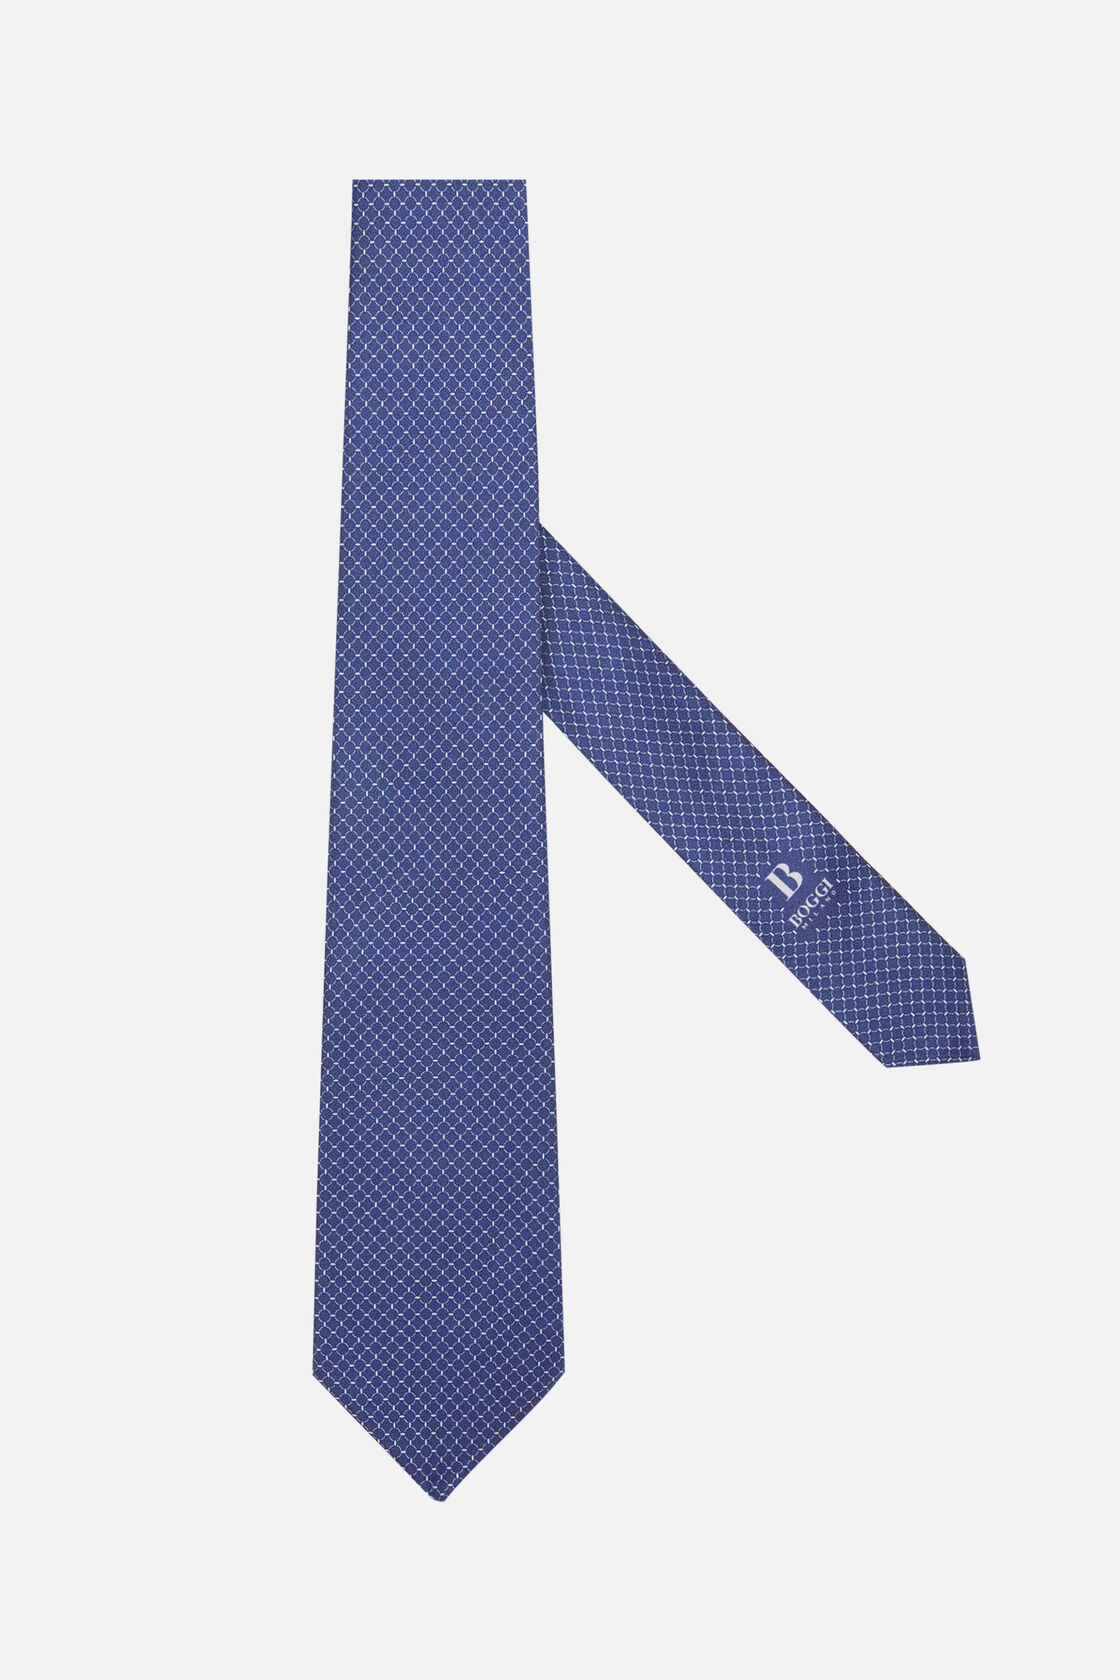 Μεταξωτή γραβάτα με μικρά σχέδια, Navy blue, hi-res